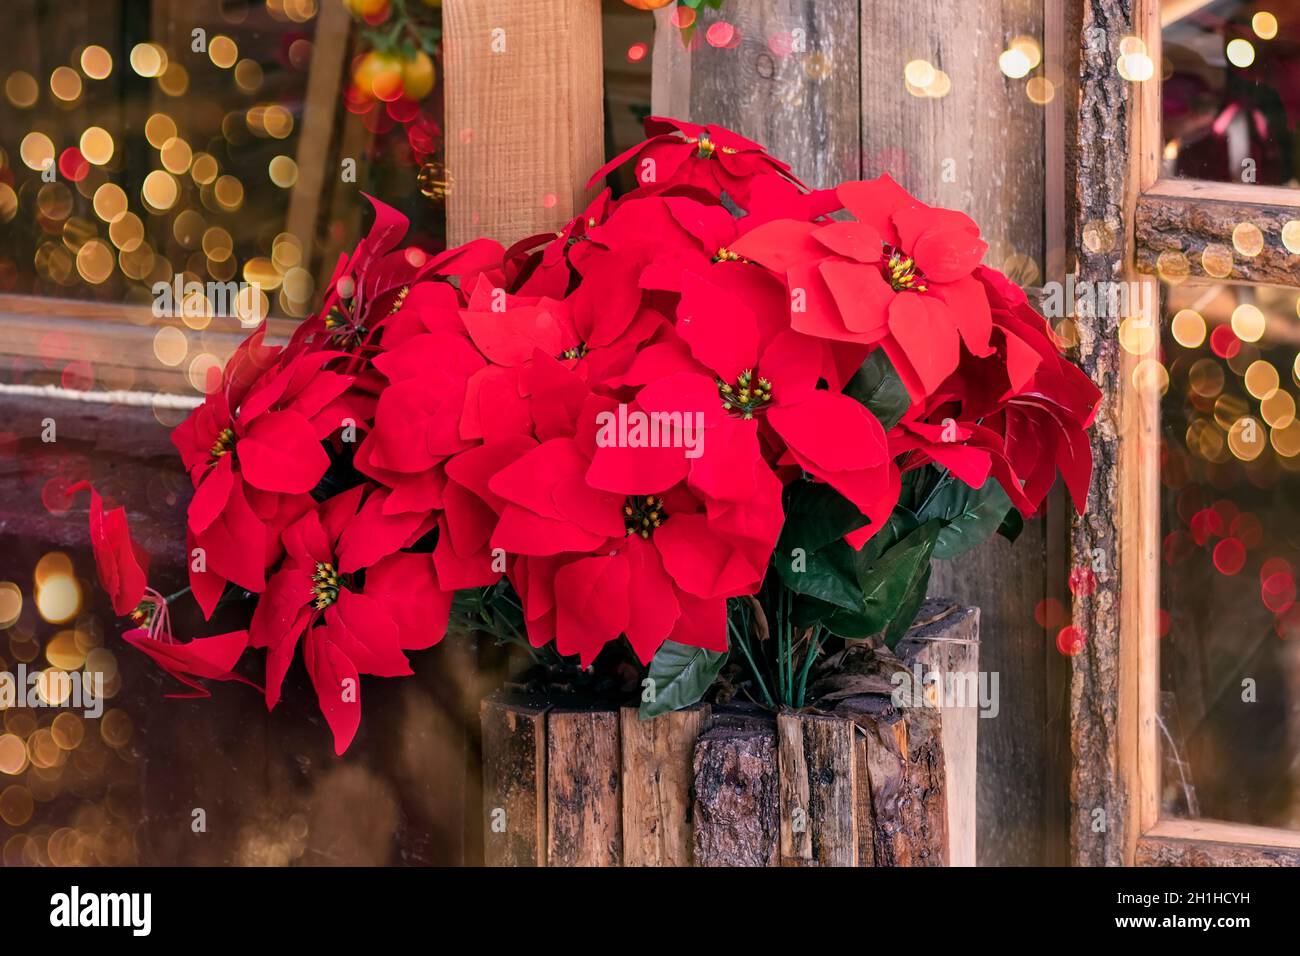 Biglietto festivo con Poinsettia stella di Natale in un vaso di tavole di legno. Decorazione e preparazione per Natale e Capodanno. Vendita di piante stagionali per Foto Stock